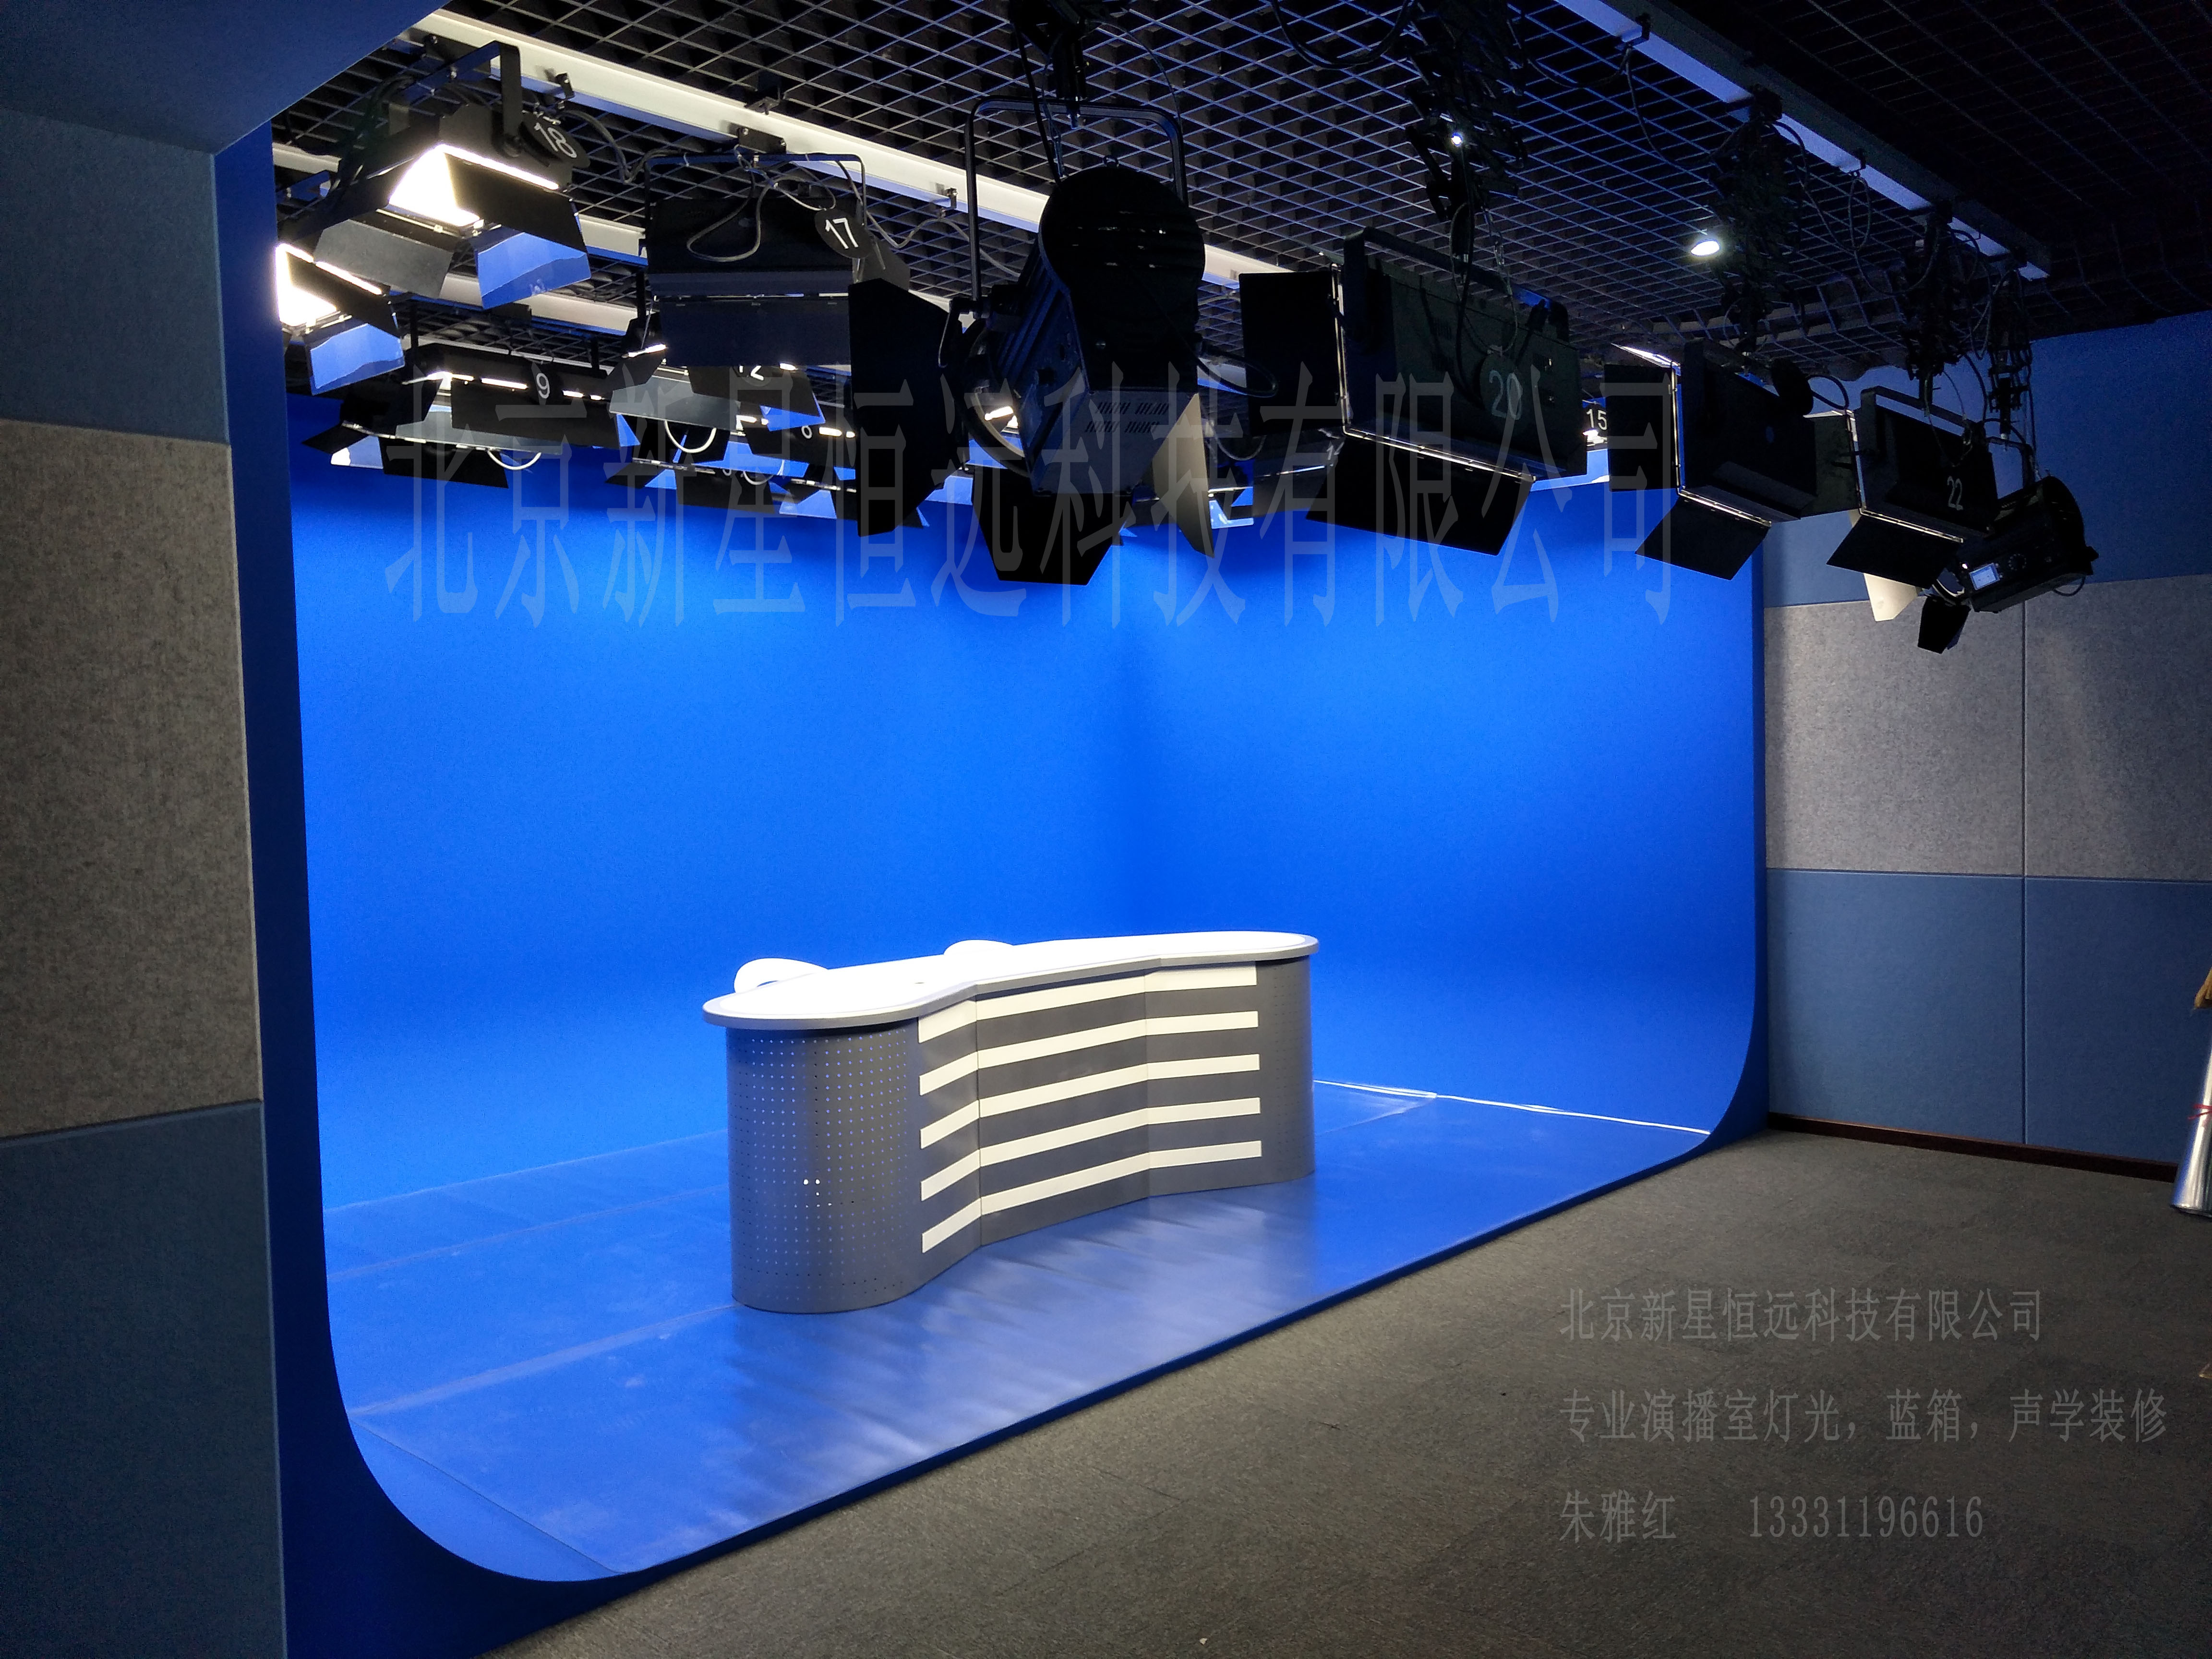 演播室 蓝箱 虚拟蓝箱 虚拟演播室 虚拟背景 演播室抠像背景